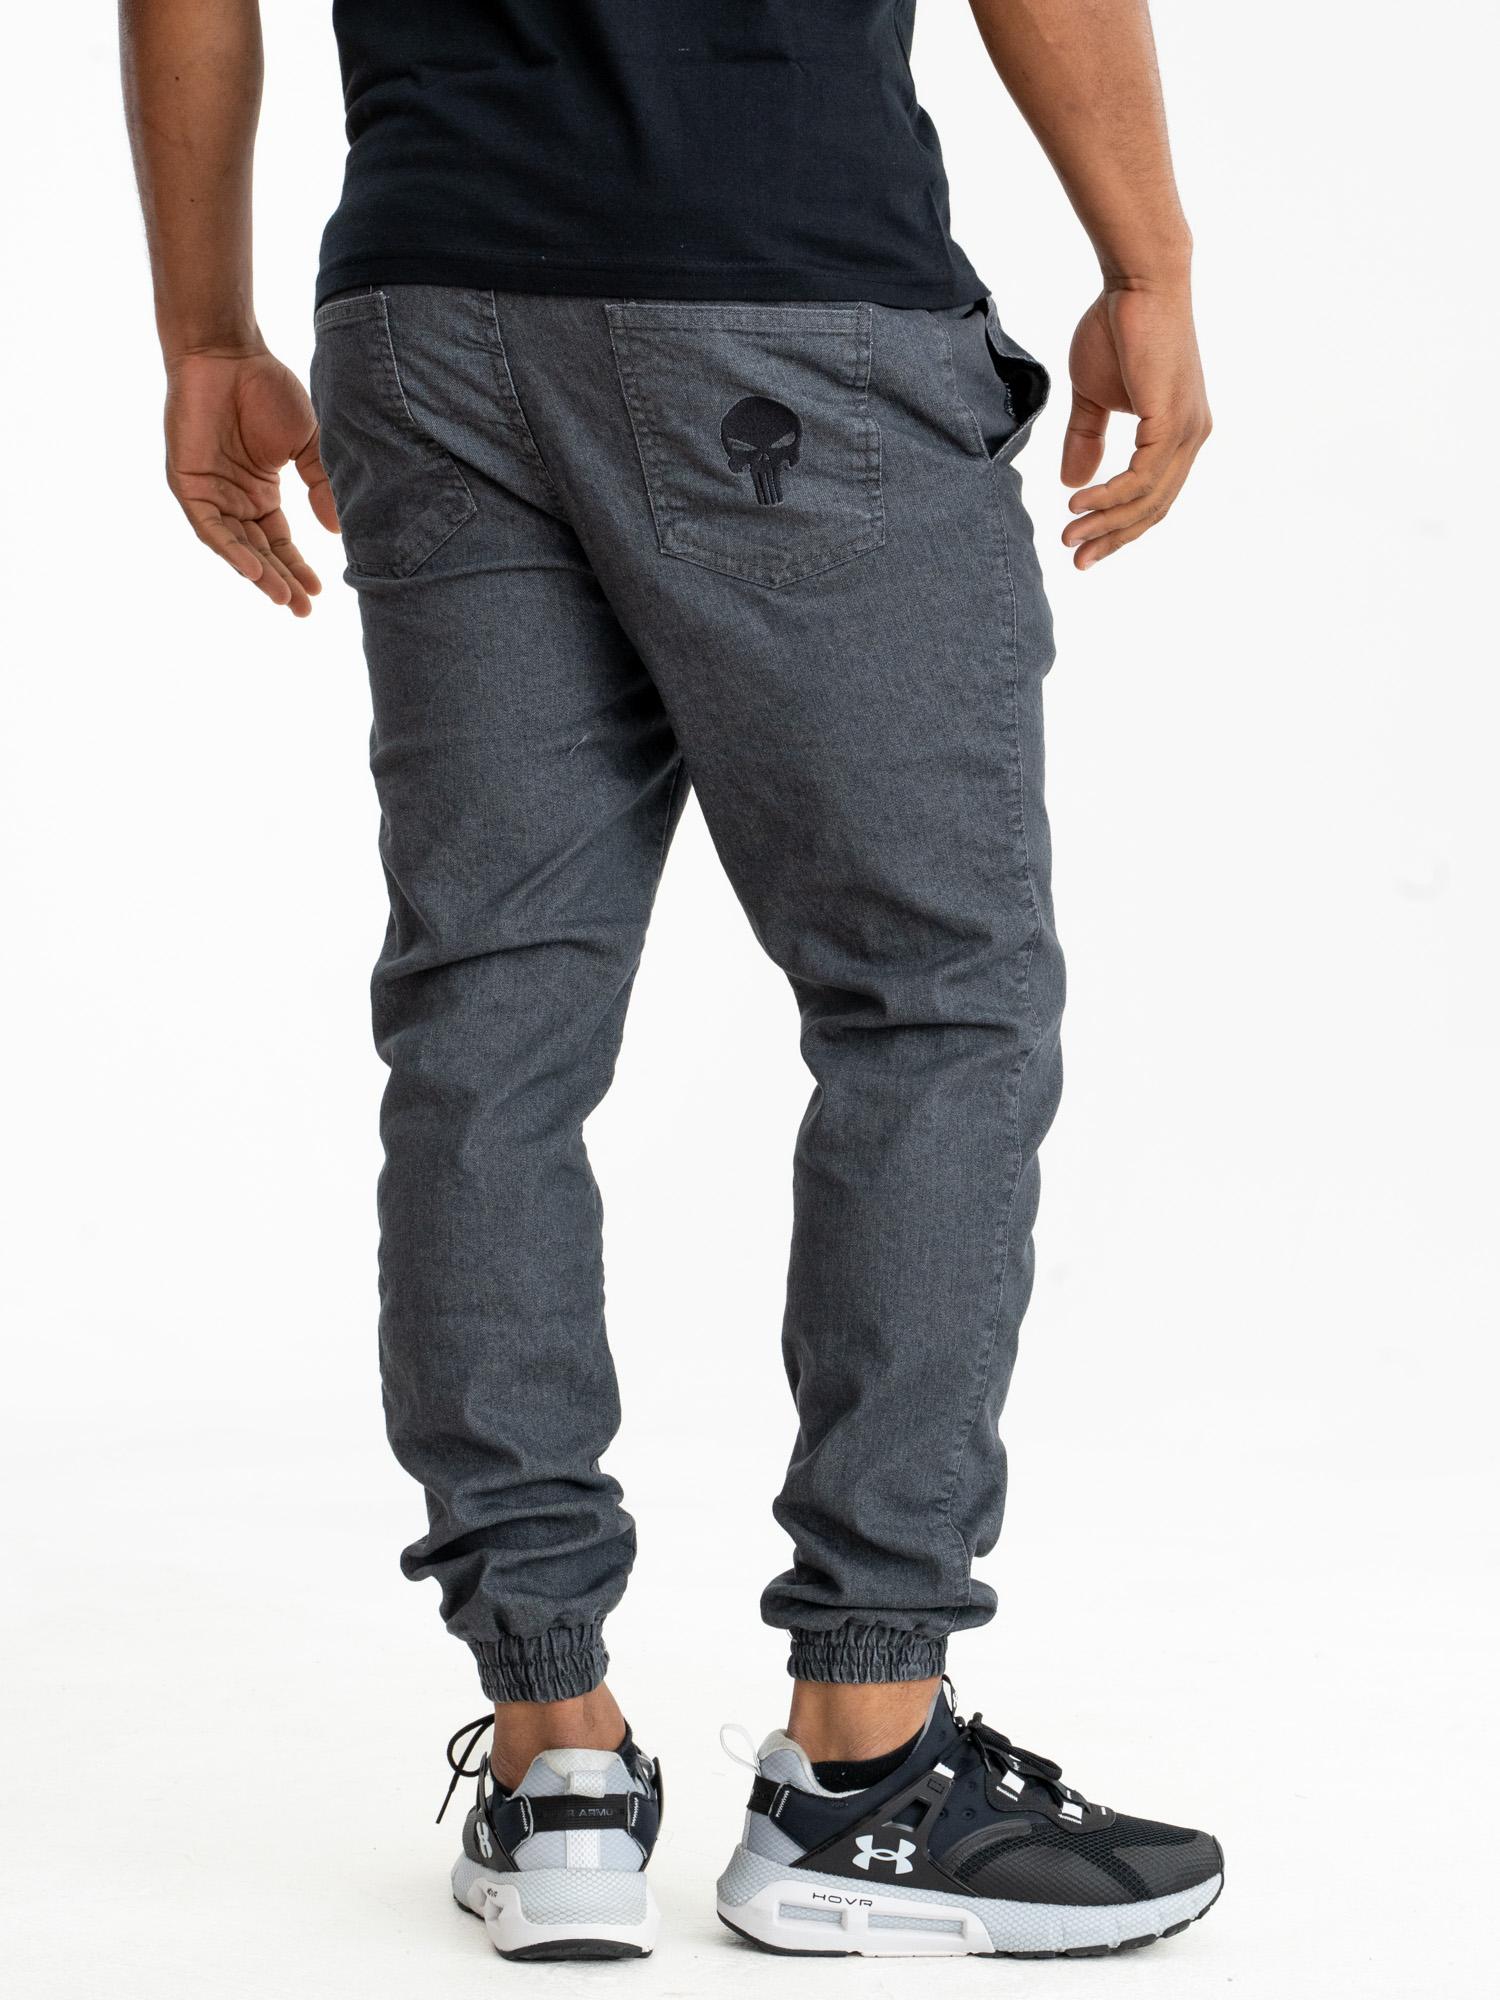 Pánske džínsové NOHAVICE PUNISHER logo Marvel Sťahovák módne štýlové šedé L